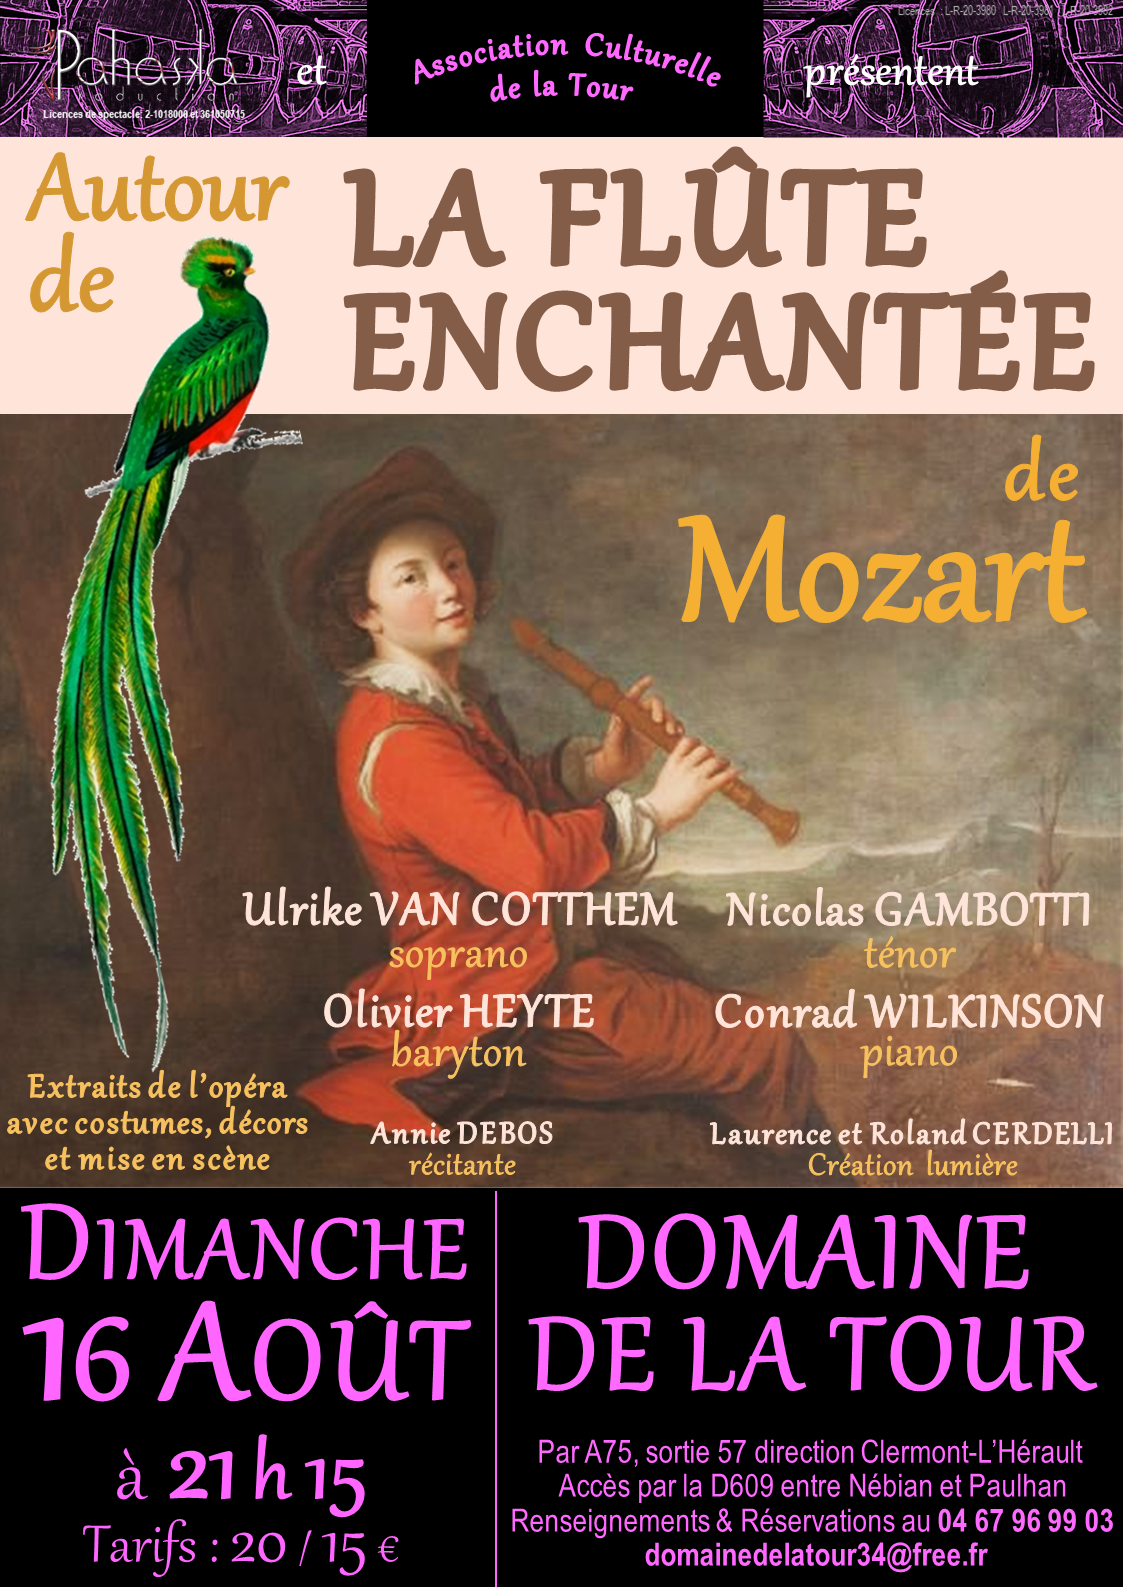 Soirée Opéra avec les plus beaux extraits de la Flûte Enchantée de MOZART, Dimanche 16 août 2020 à 21h15